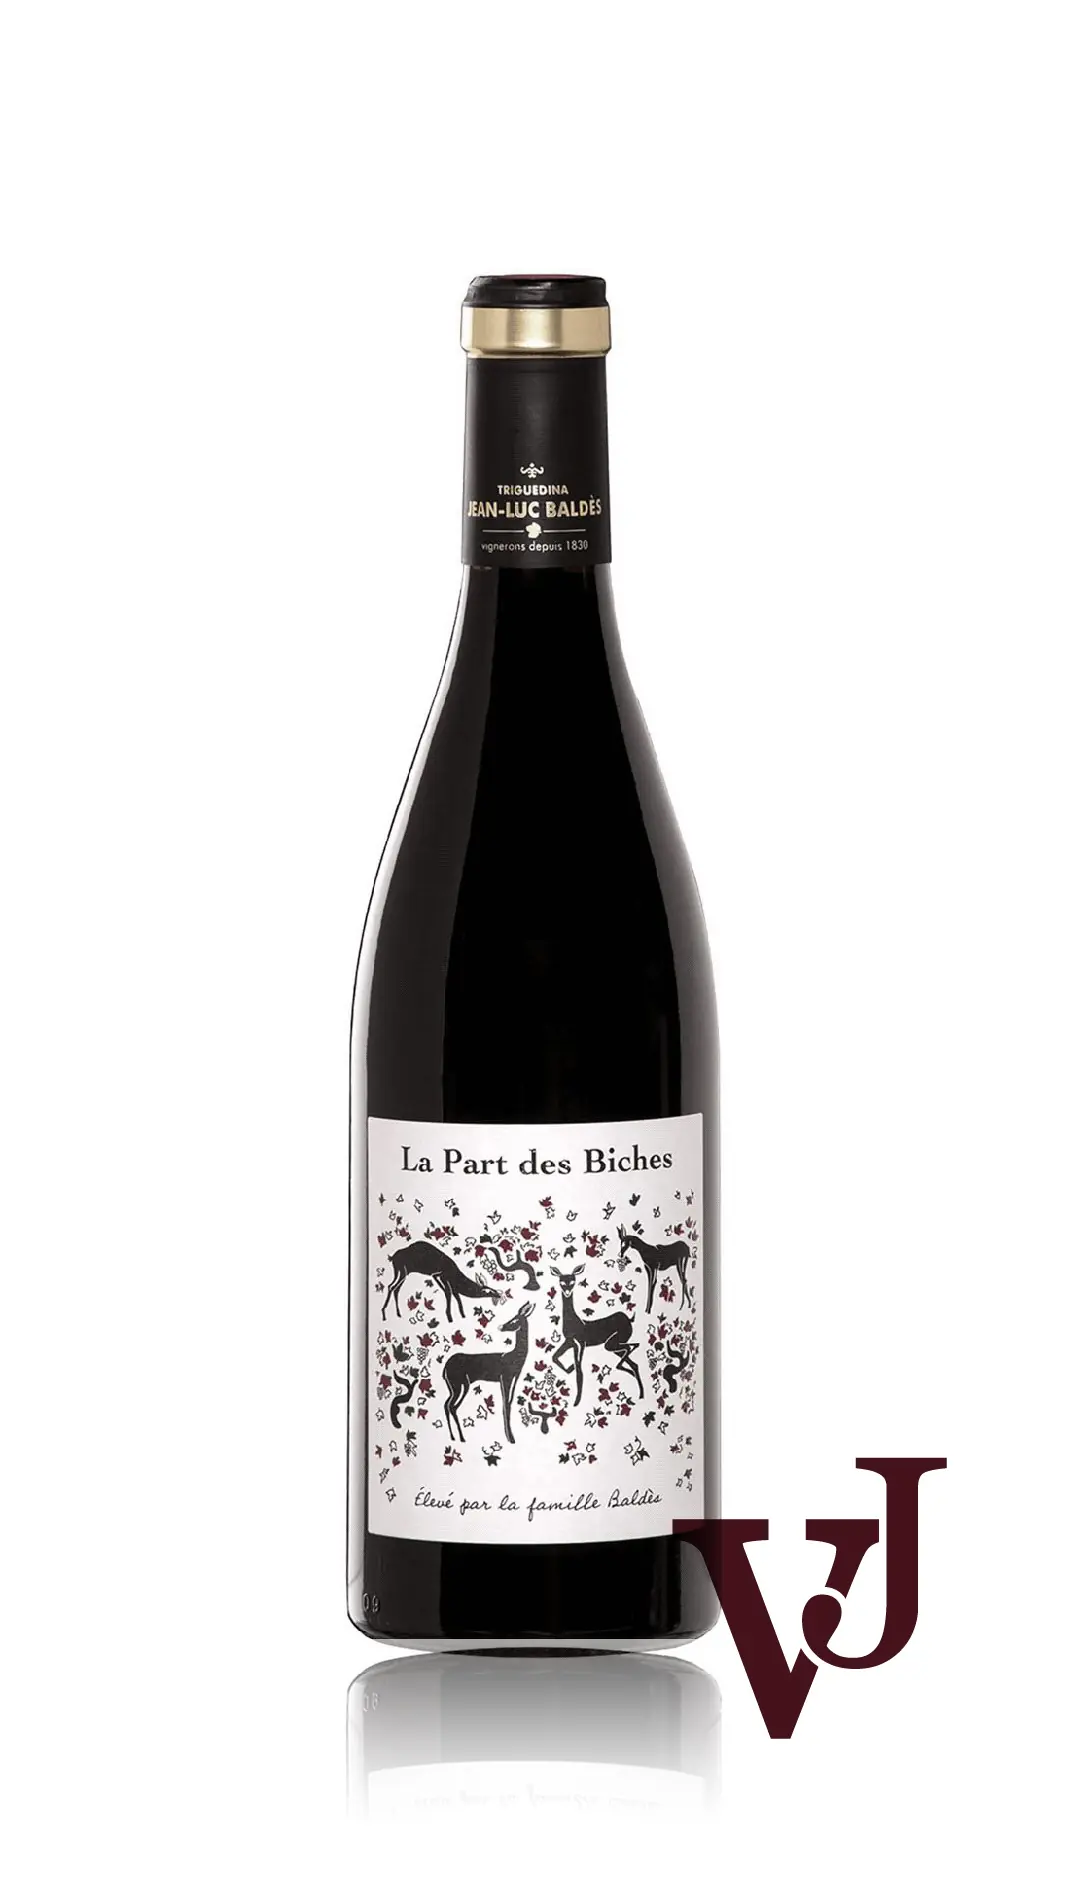 Rött Vin - La Part des Biches artikel nummer 5507901 från producenten Jean Luc Baldes-Clos Triguedina från området Frankrike - Vinjournalen.se